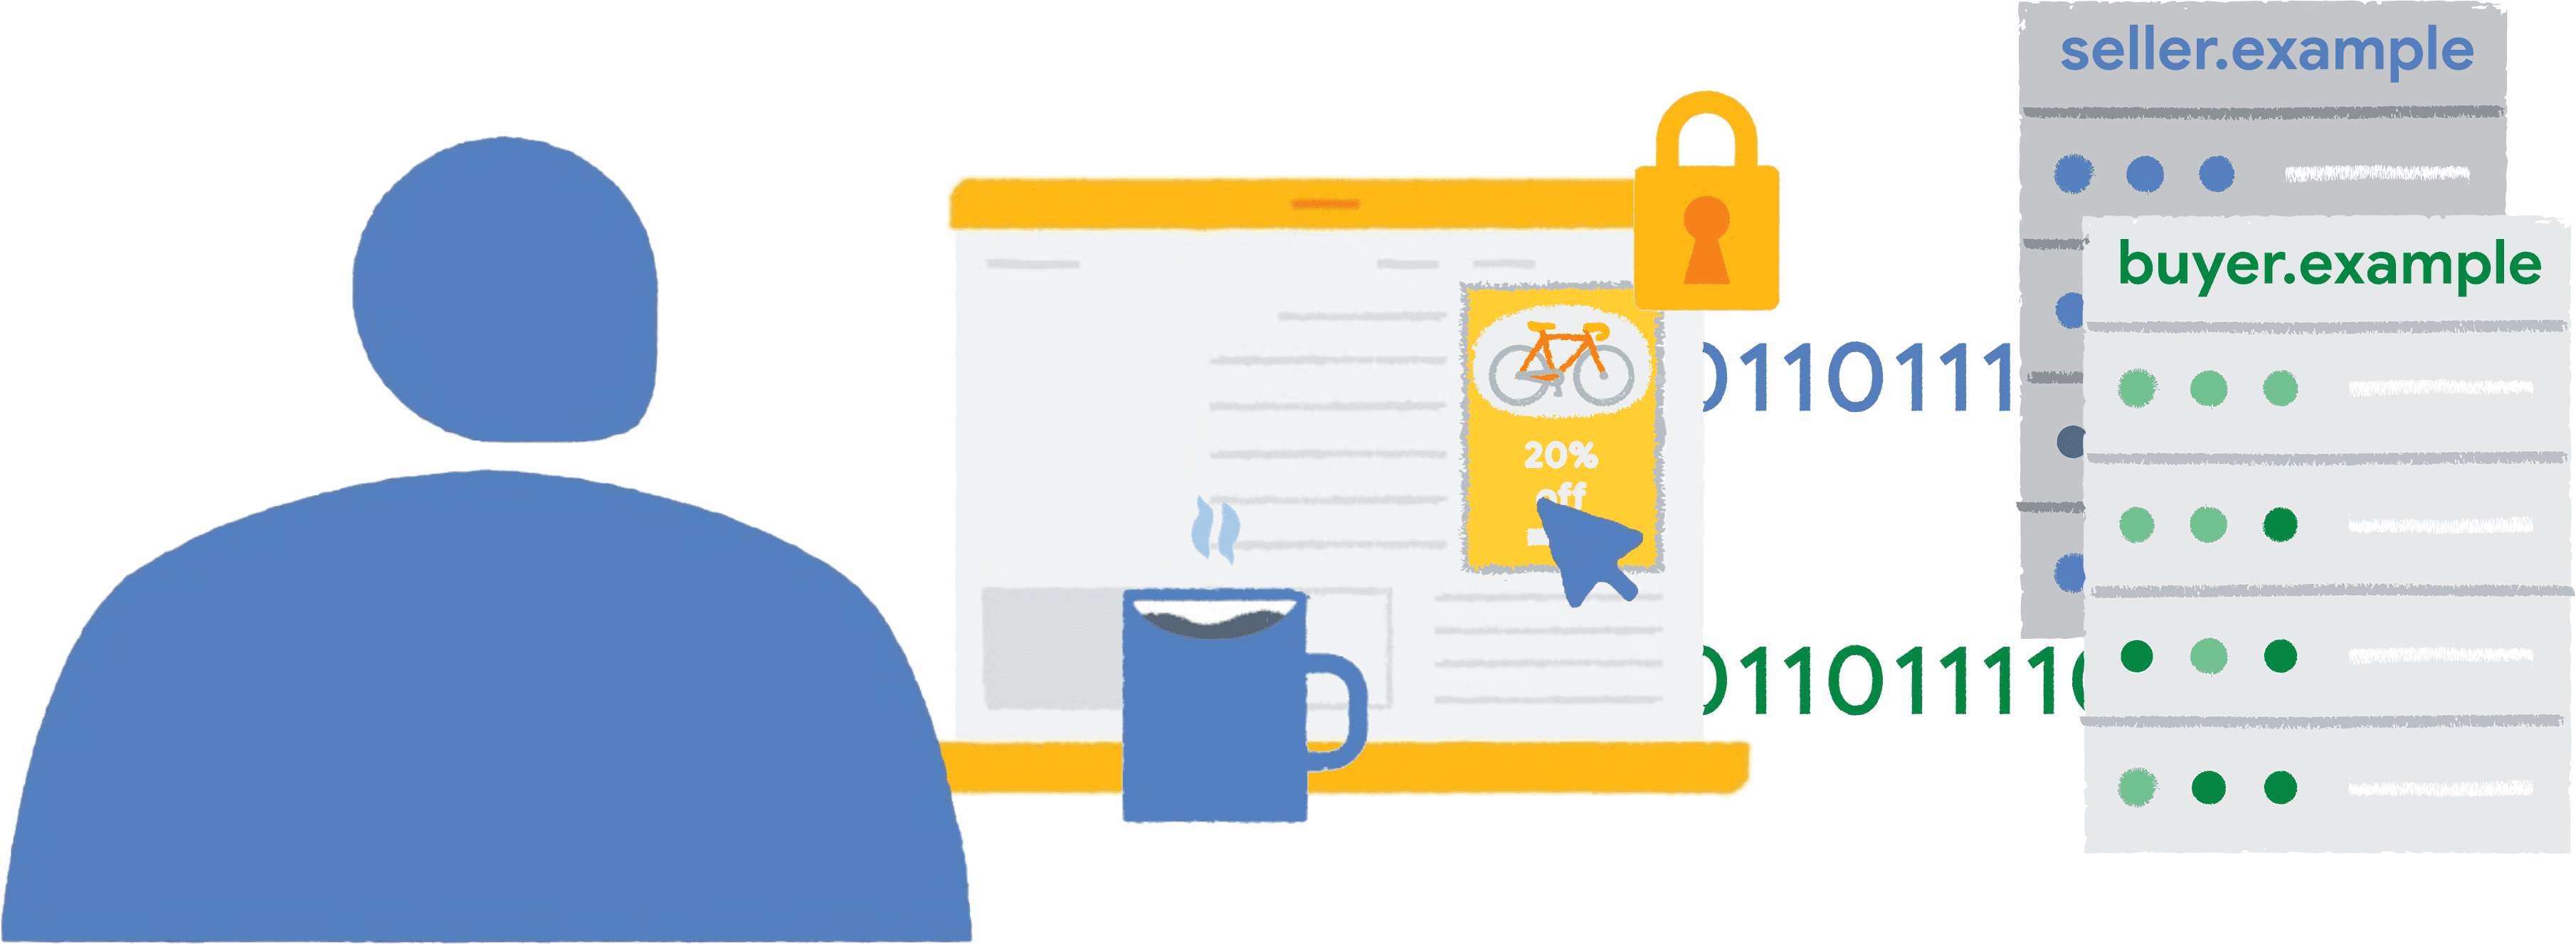 ผู้ใช้รายหนึ่งคลิกโฆษณาจักรยานที่มีกรอบล้อมรั้วในเว็บไซต์ข่าว ระบบจะส่งข้อมูลรายงานไปยังผู้ขายและผู้ซื้อ